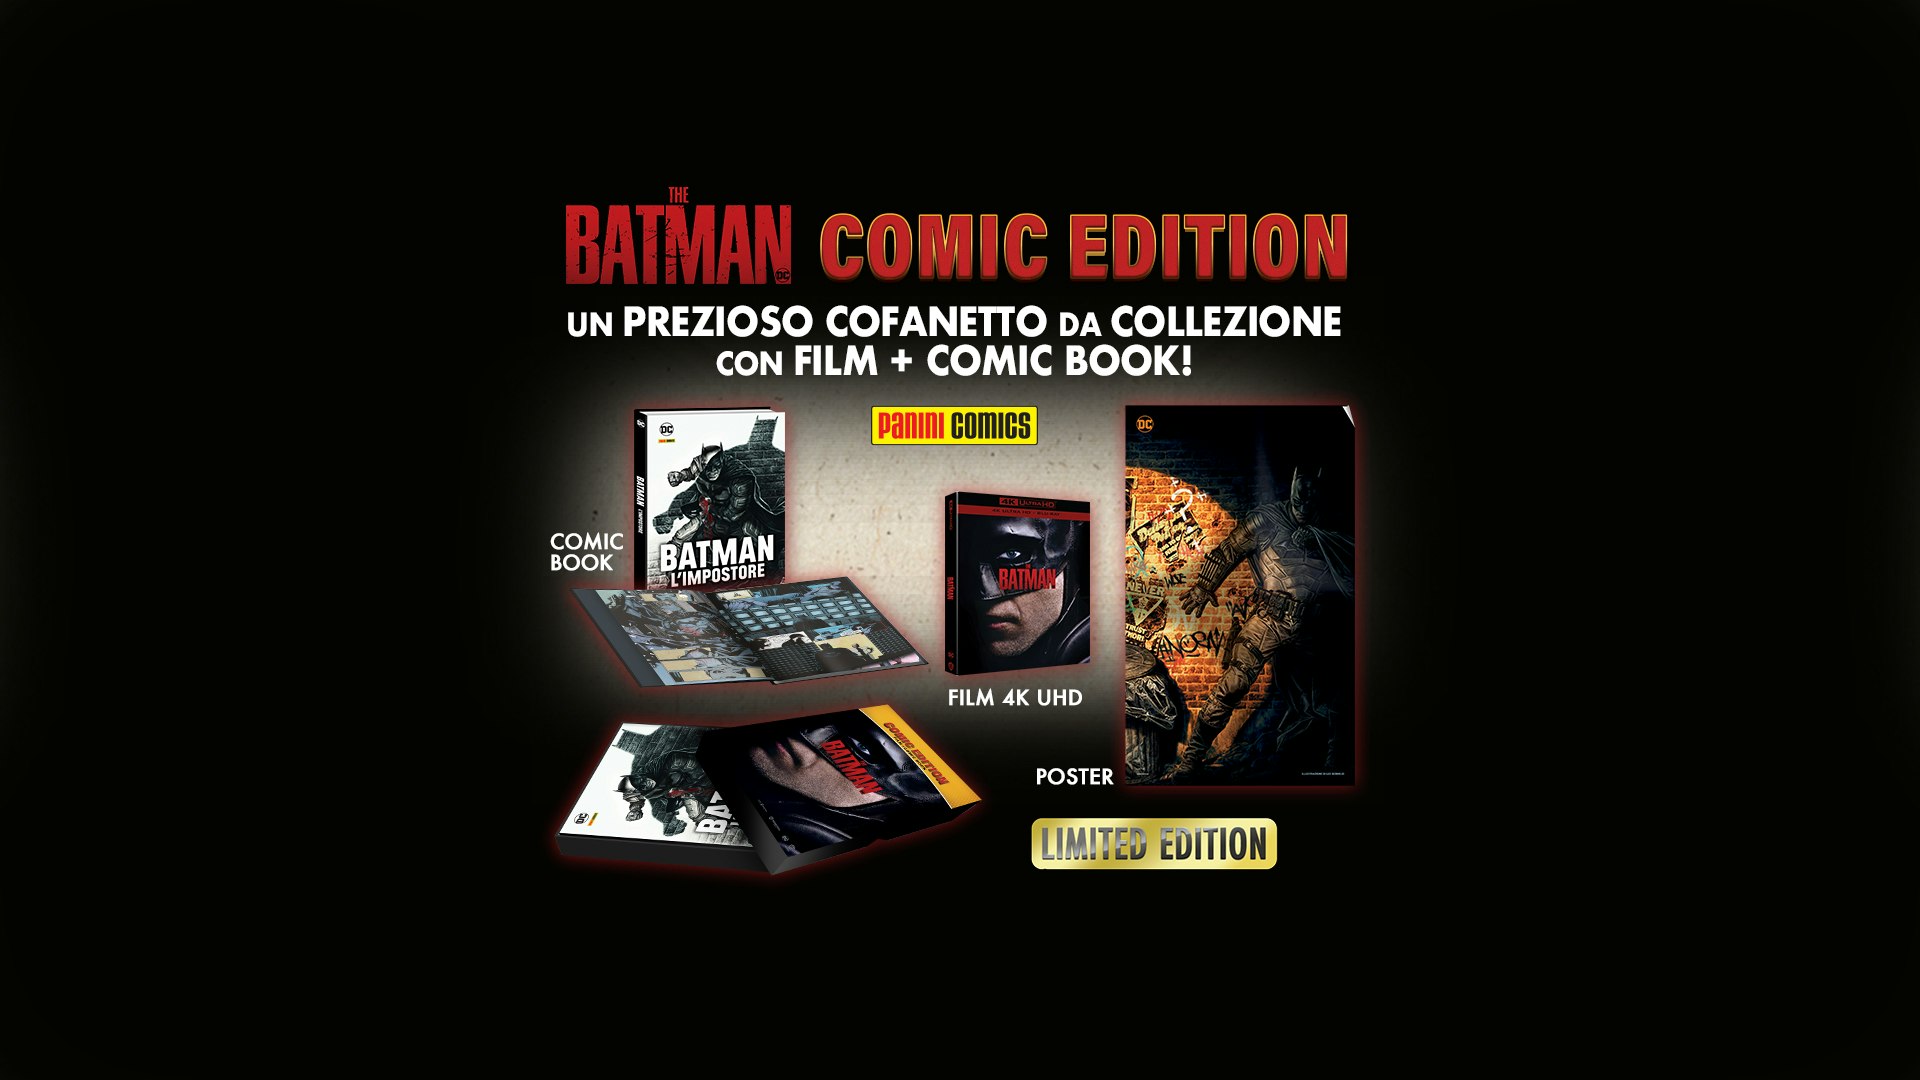 Scopri la Comic Edition di The Batman